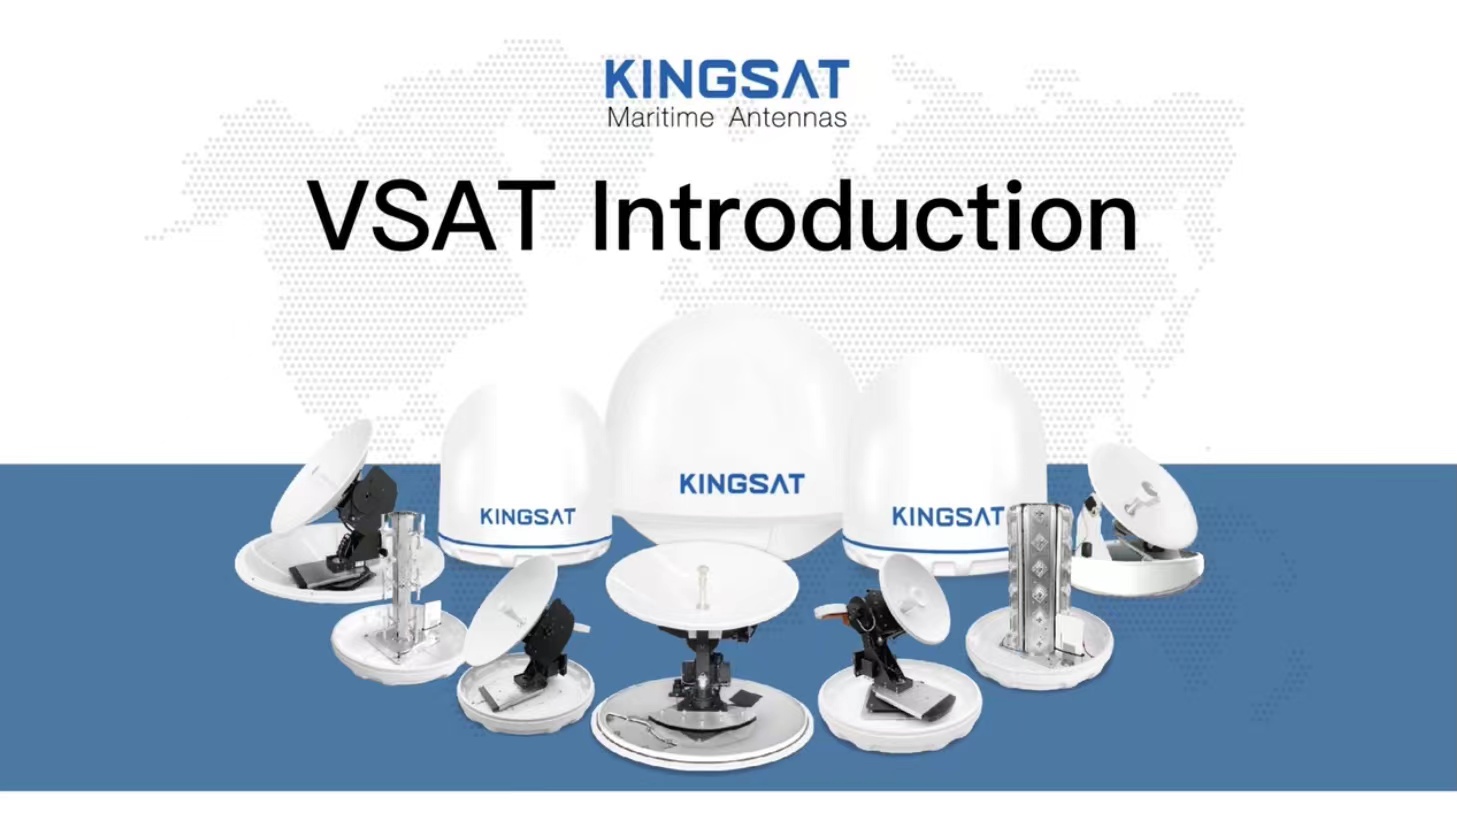 VSAT Introduction